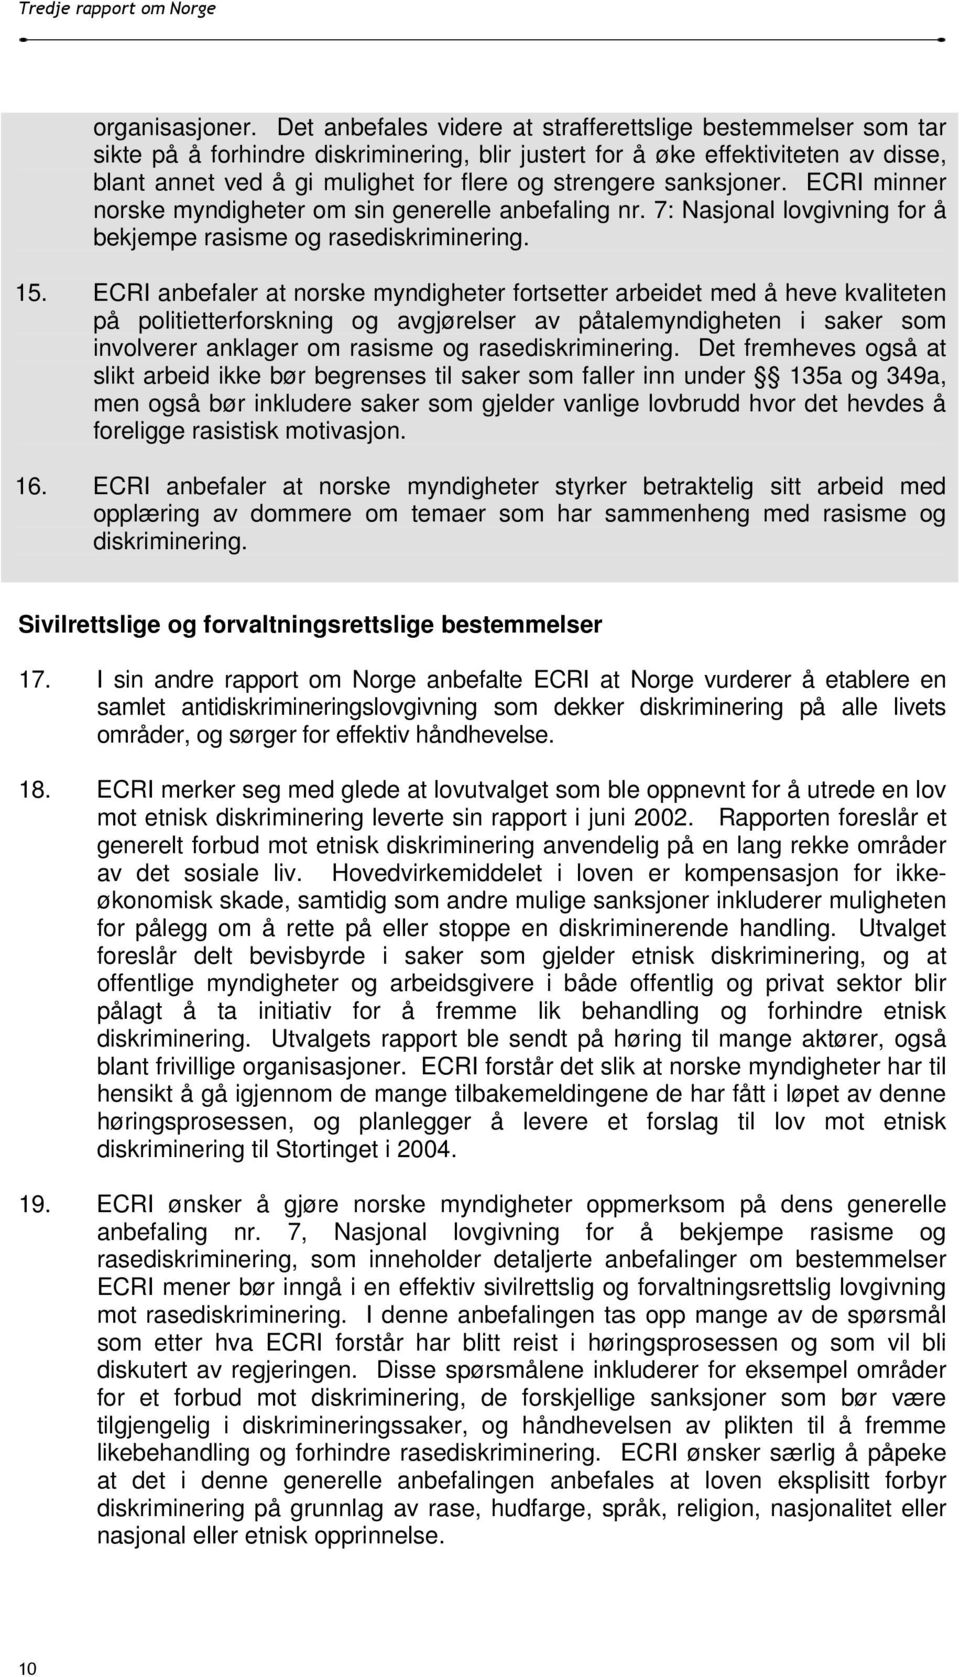 sanksjoner. ECRI minner norske myndigheter om sin generelle anbefaling nr. 7: Nasjonal lovgivning for å bekjempe rasisme og rasediskriminering. 15.